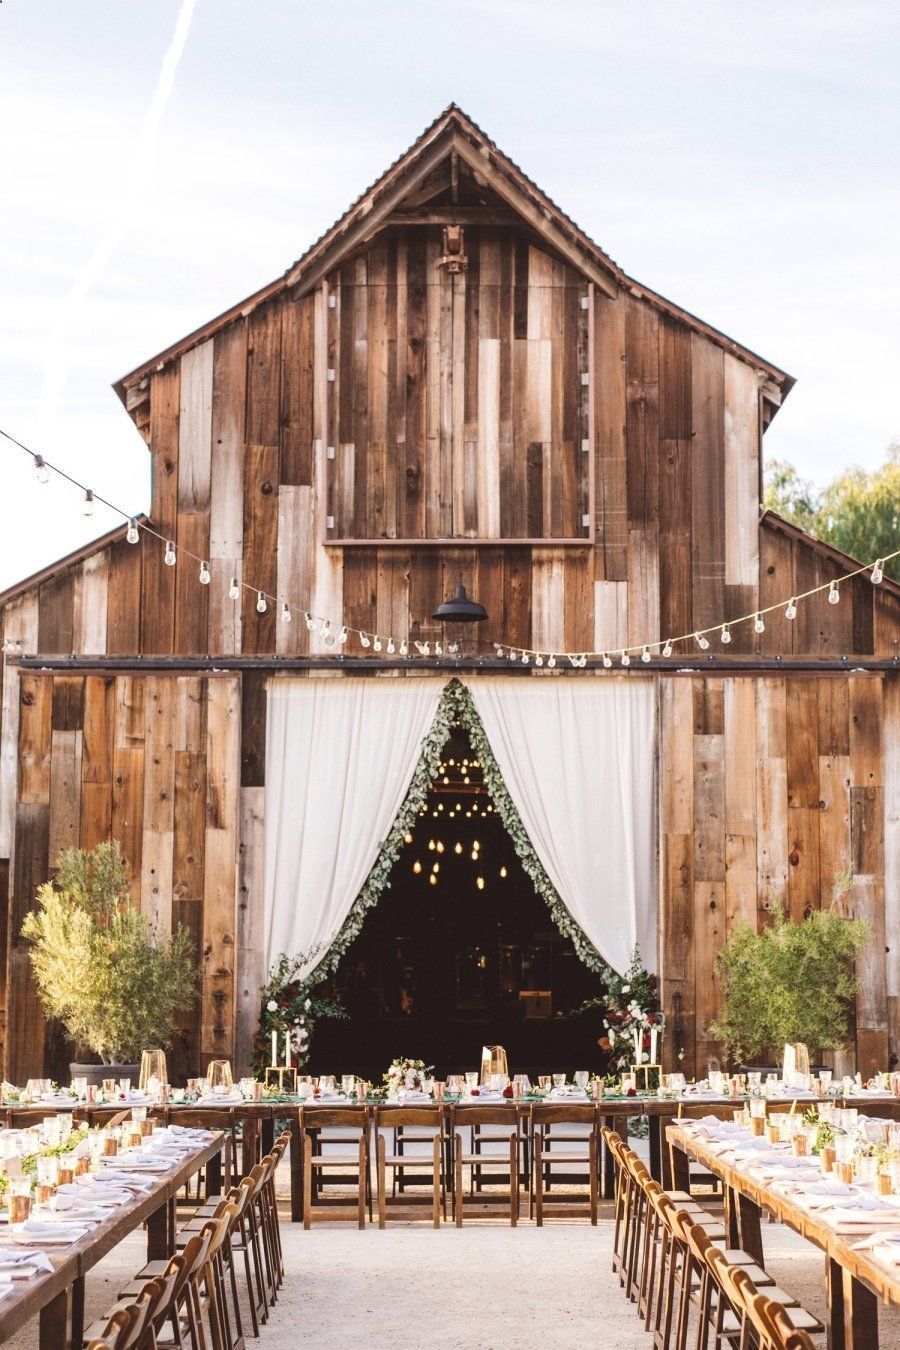 36 Inspirational Rustic Barn Wedding Ideas 2019 -   14 wedding Venues barn ideas